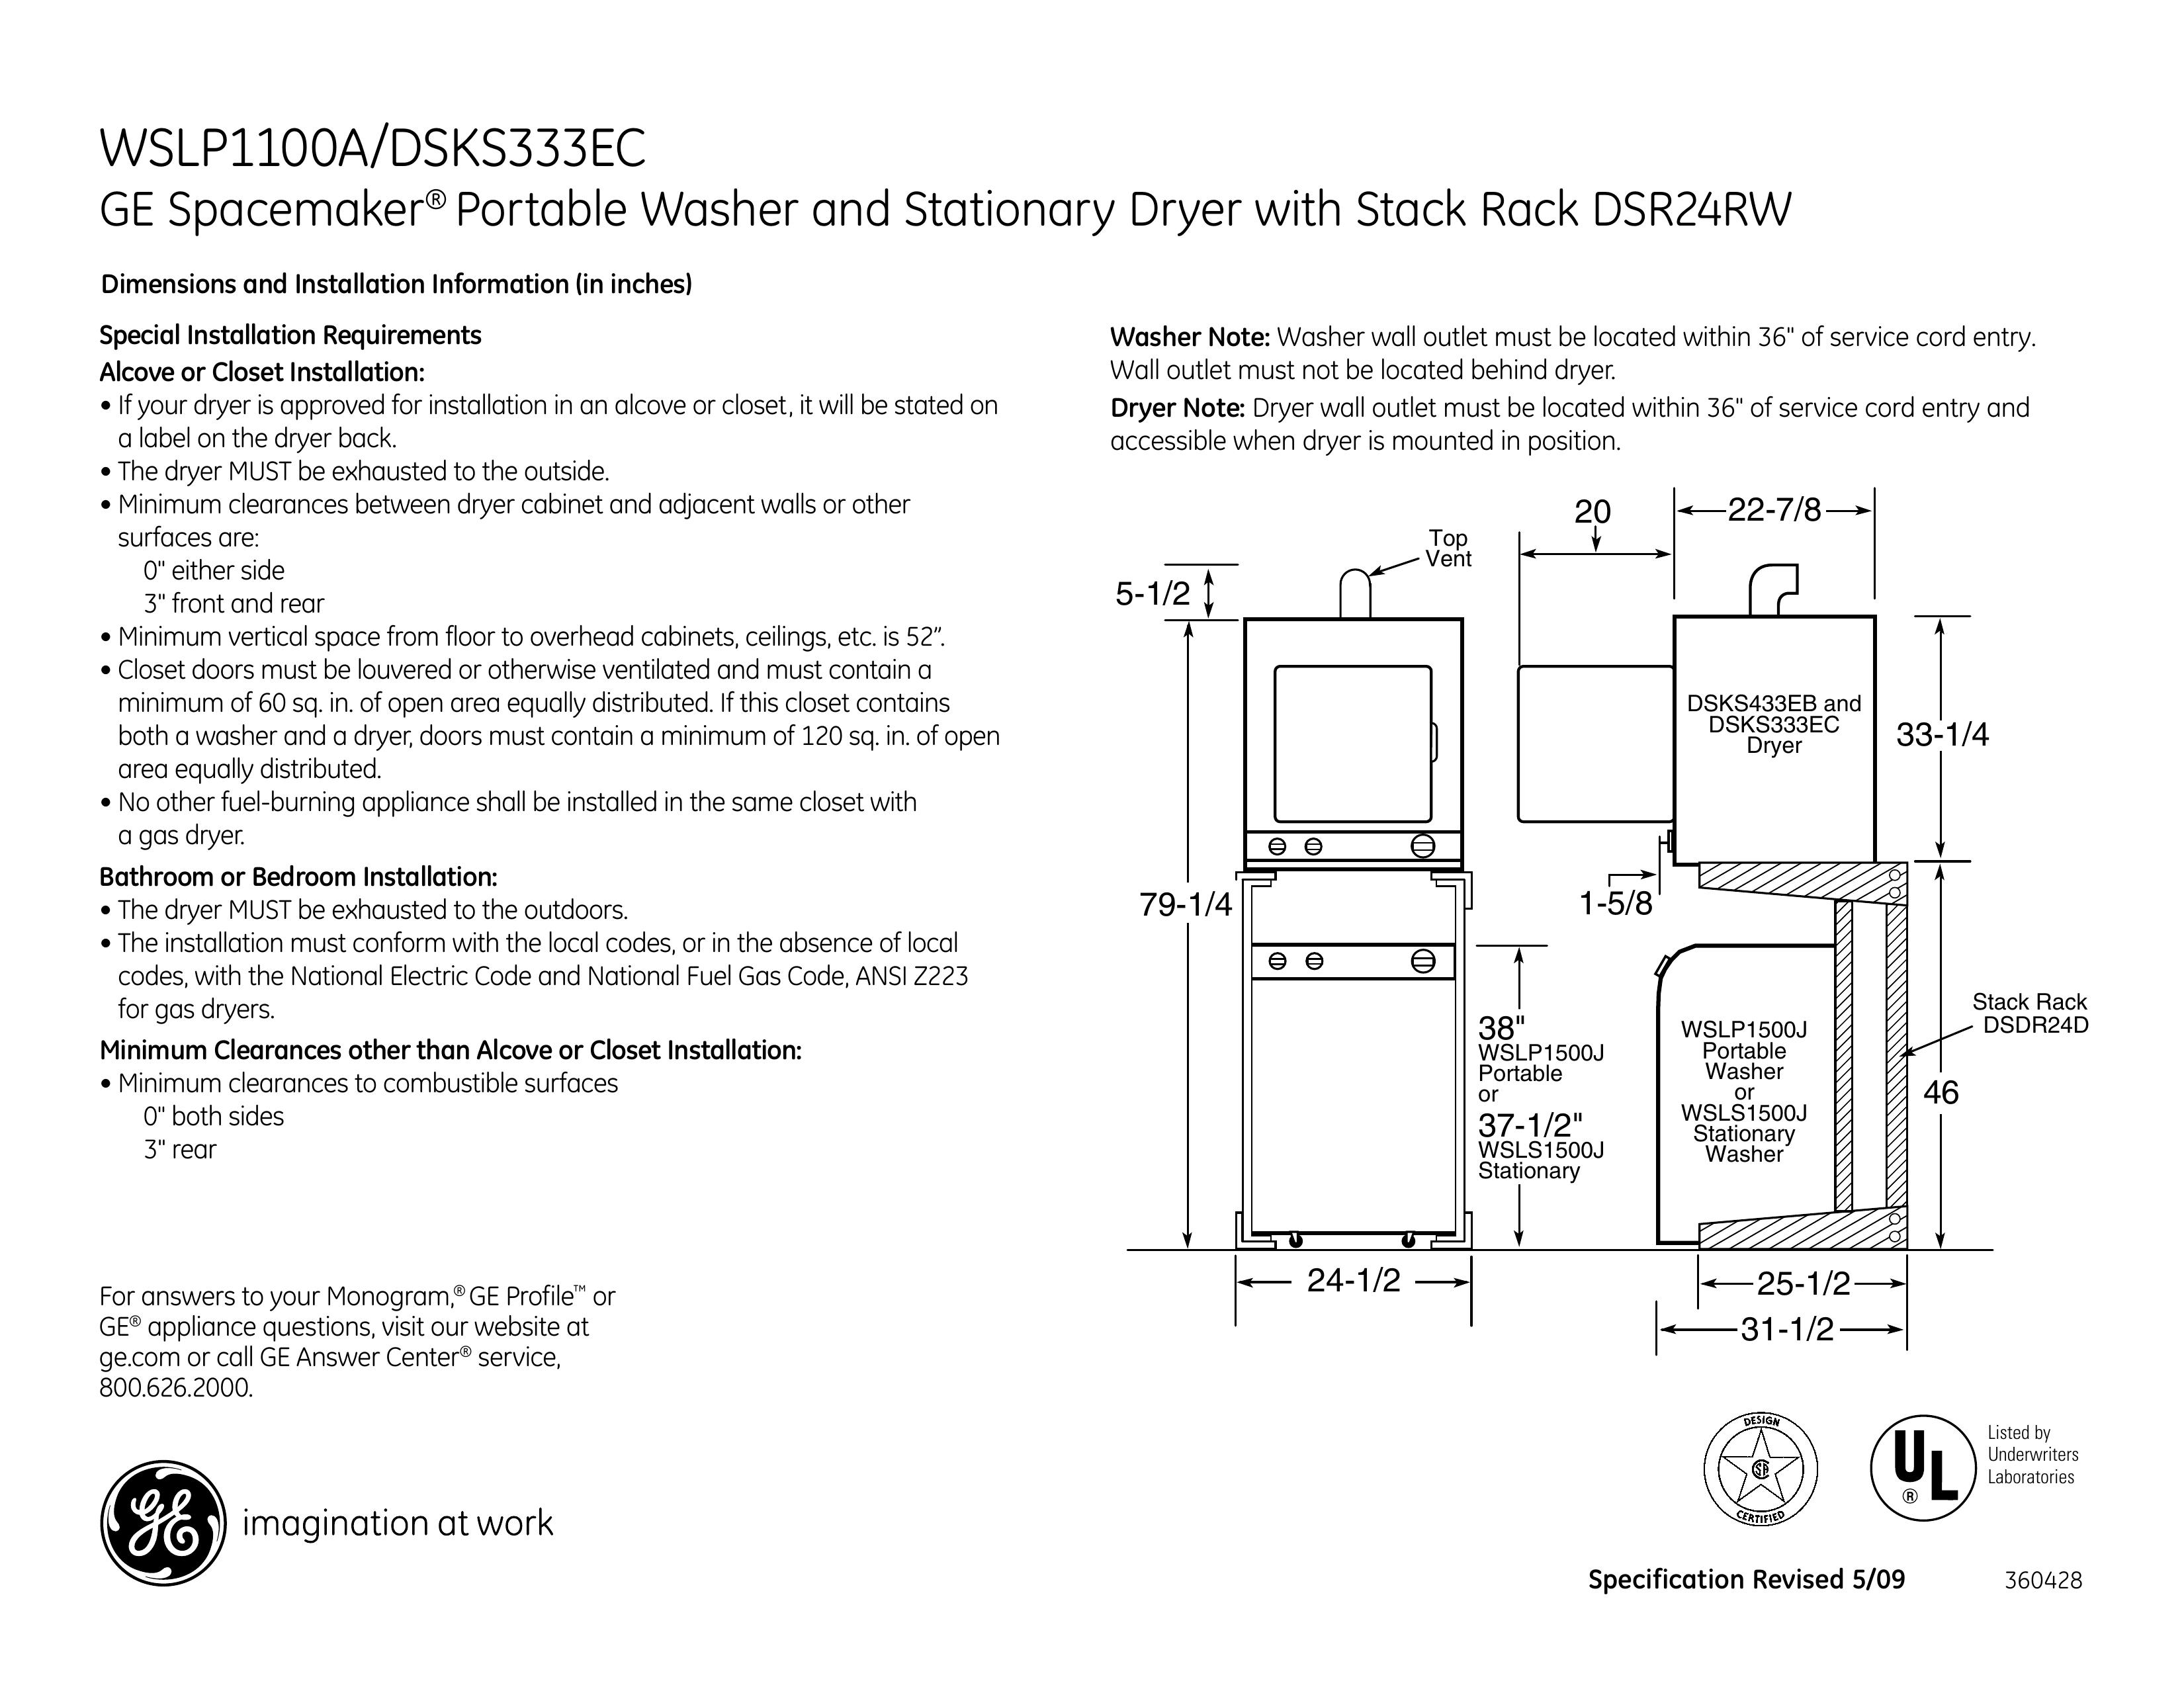 GE DSKS333EC Washer/Dryer User Manual